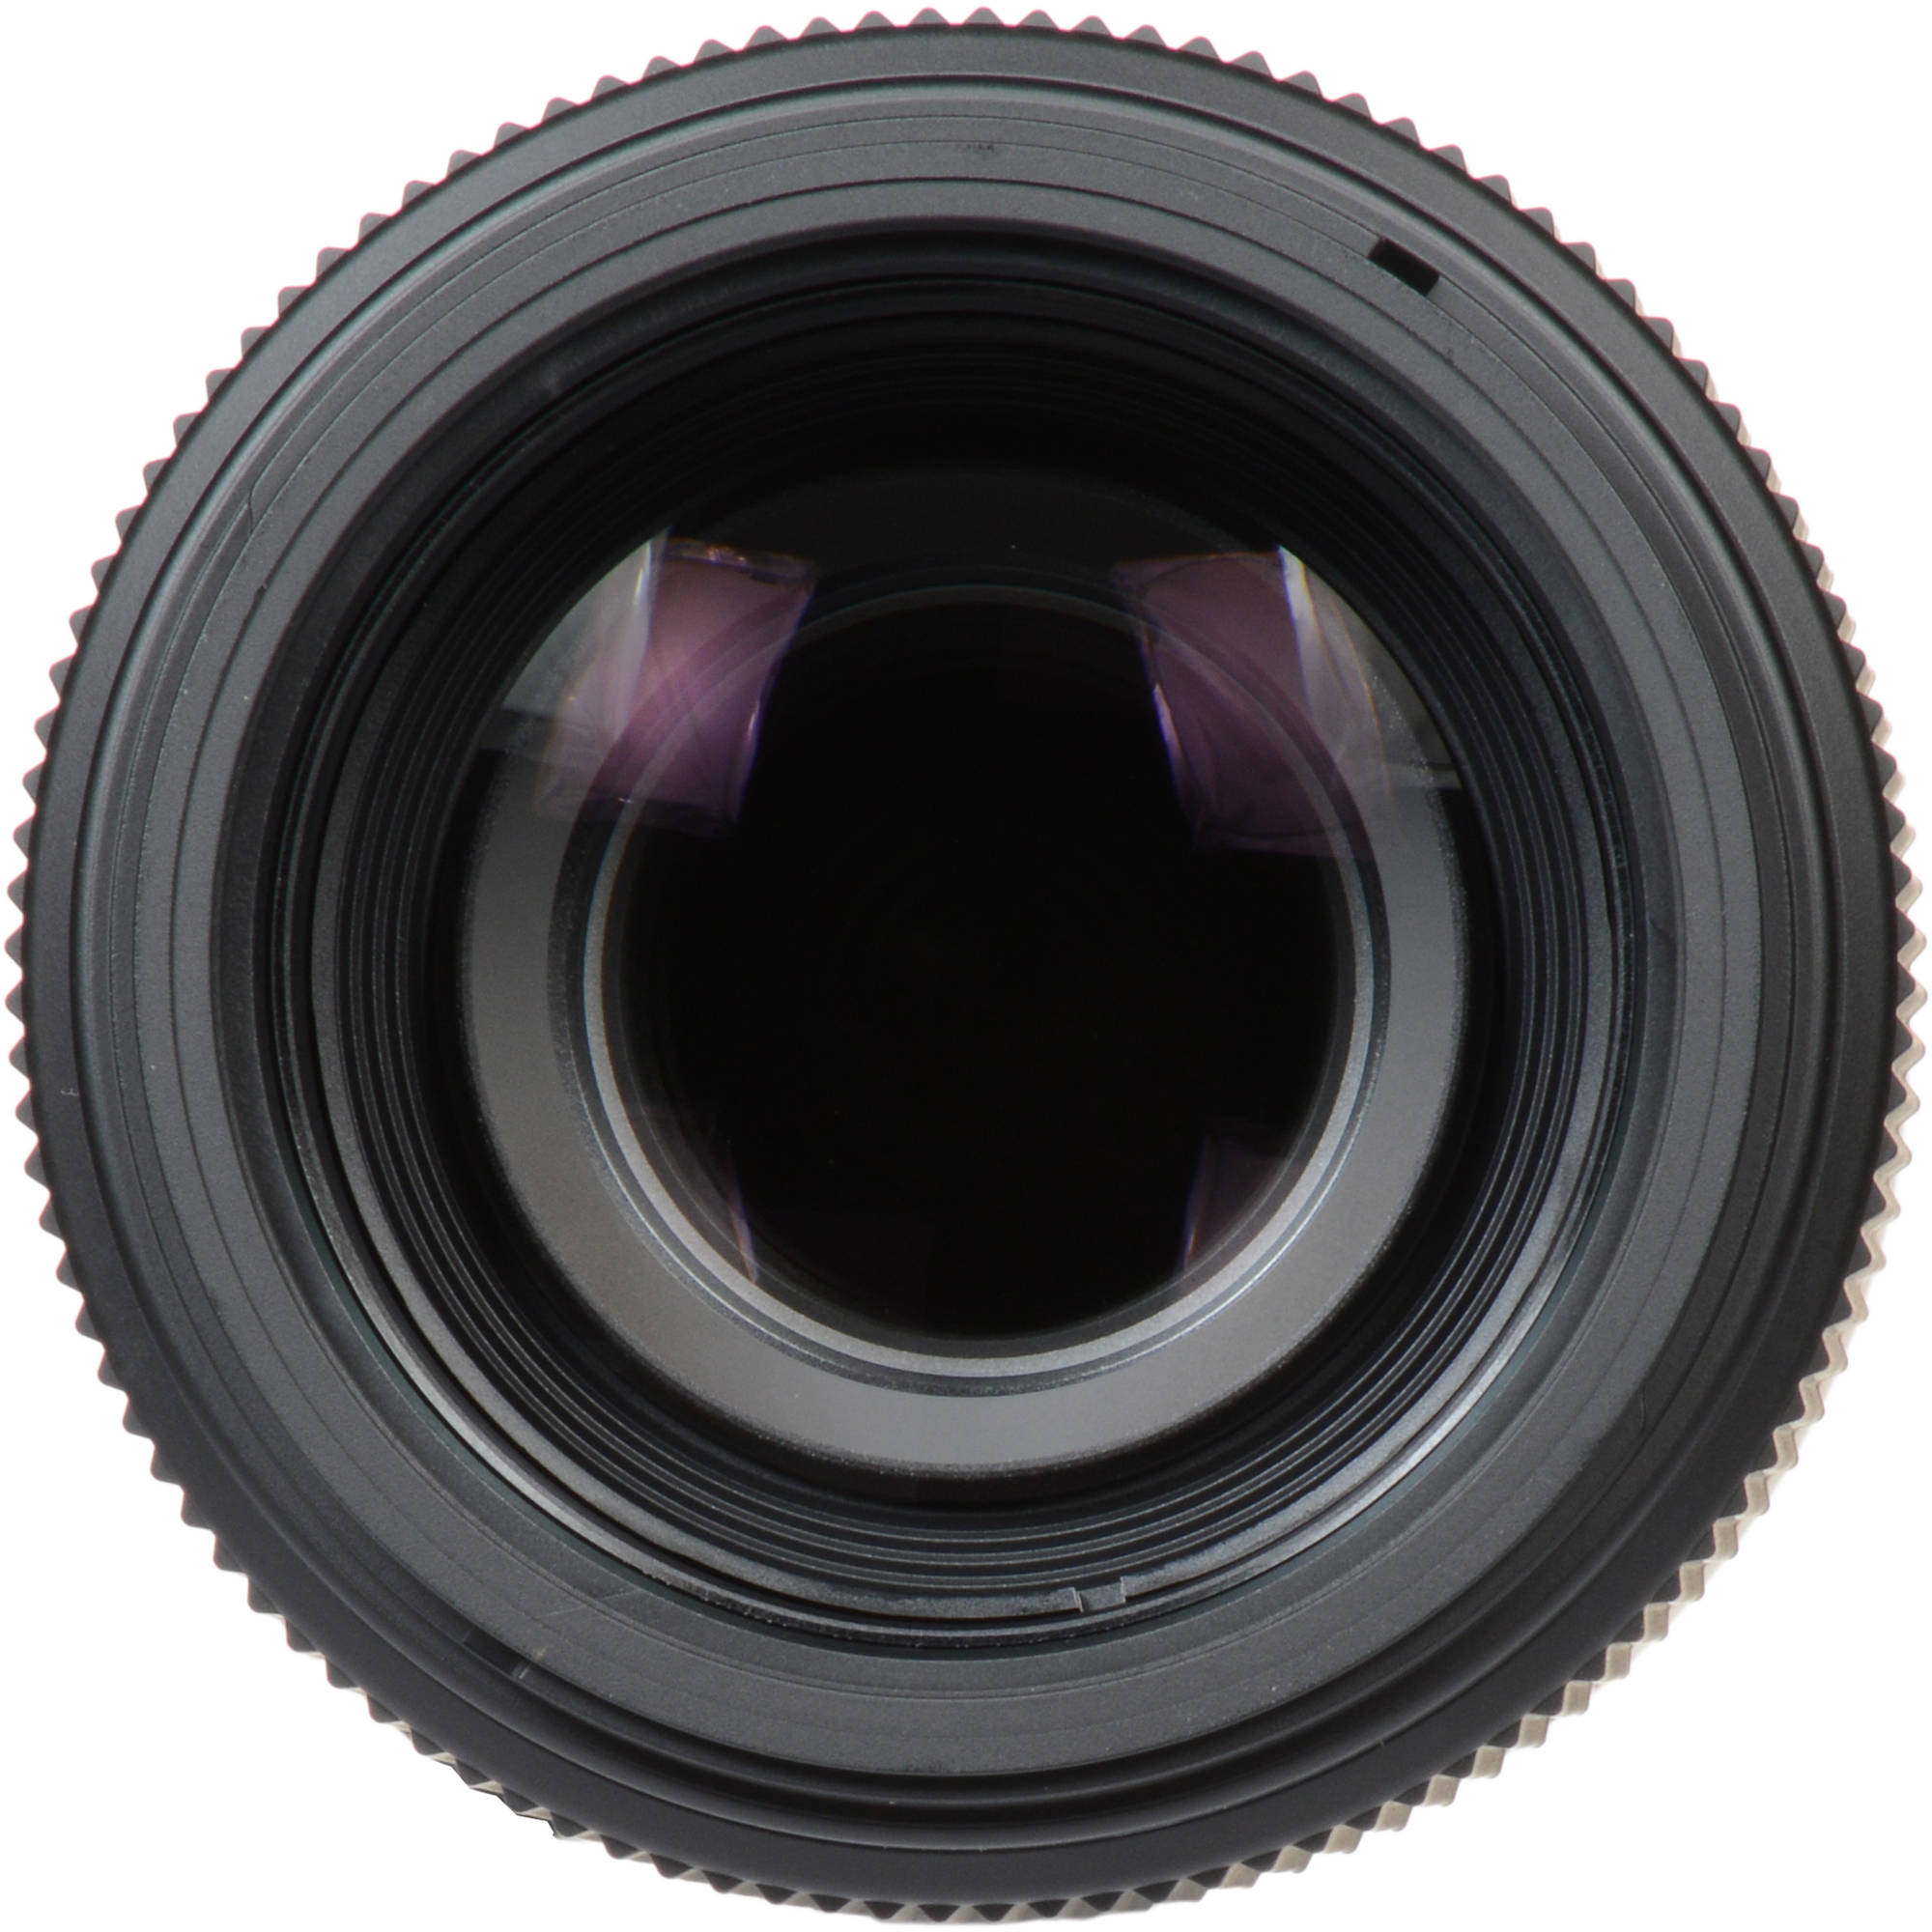 Sigma 100 400mm F 5 6 3 Dg Os Hsm Contemporary Lens B H